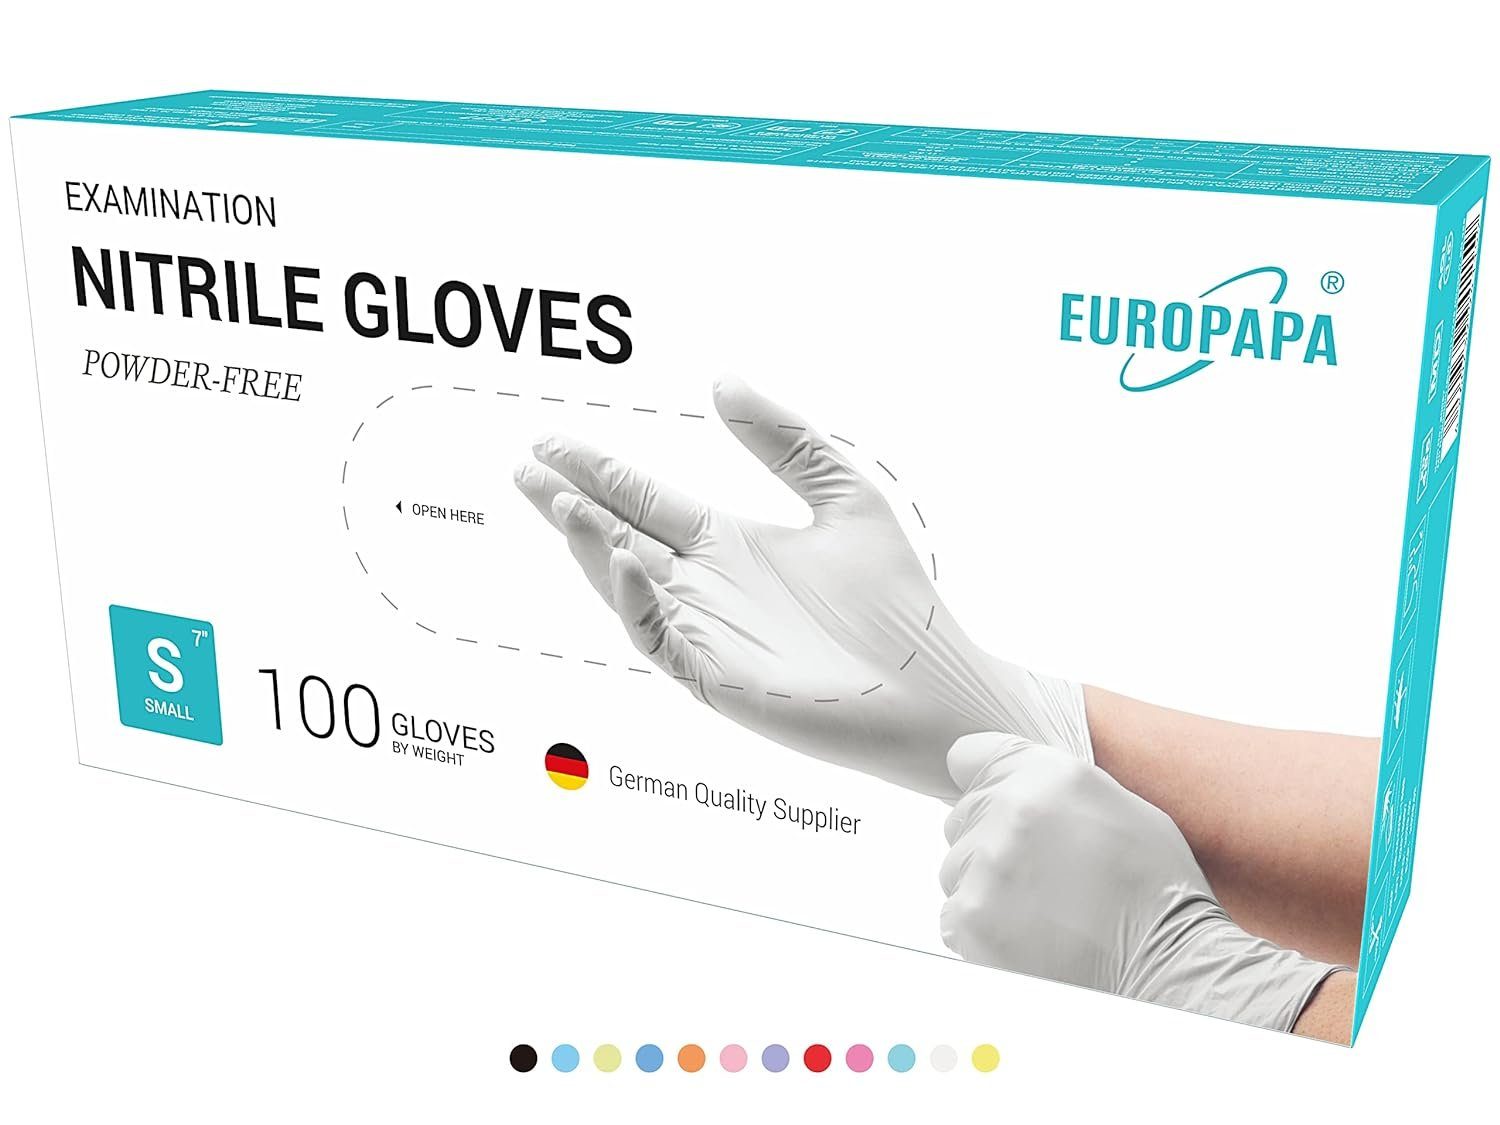 EUROPAPA Einweghandschuhe 1000x Nitrilhandschuhe Einweghandschuhe puderfrei (Untersuchungshandschuhe) EN455 EN374 latexfrei Einmalhandschuhe Handschuhe